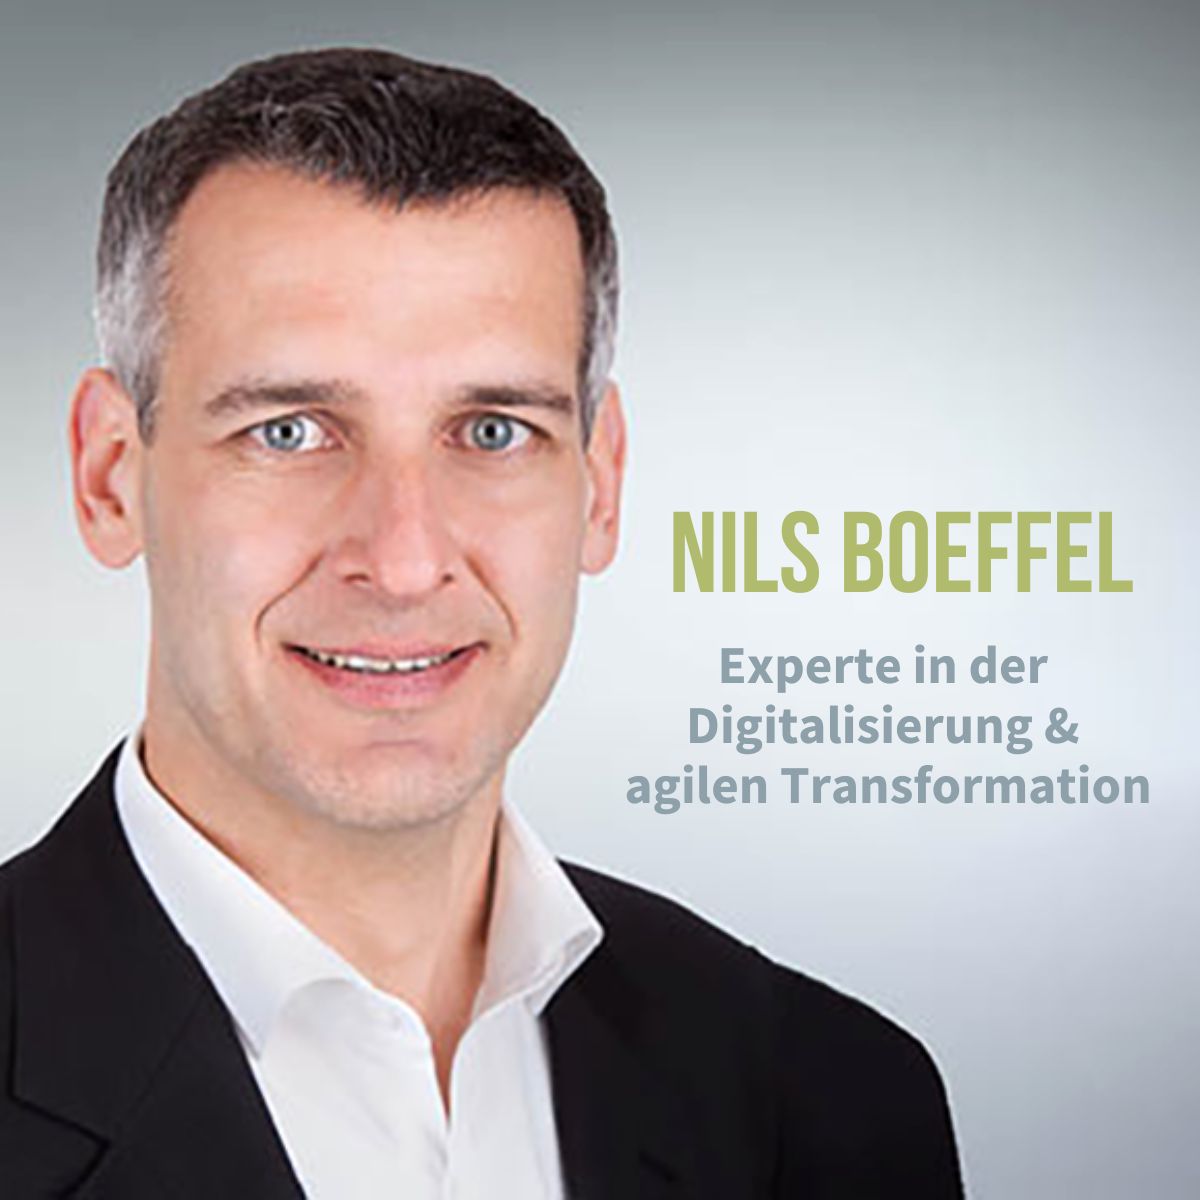 Nils Boeffel